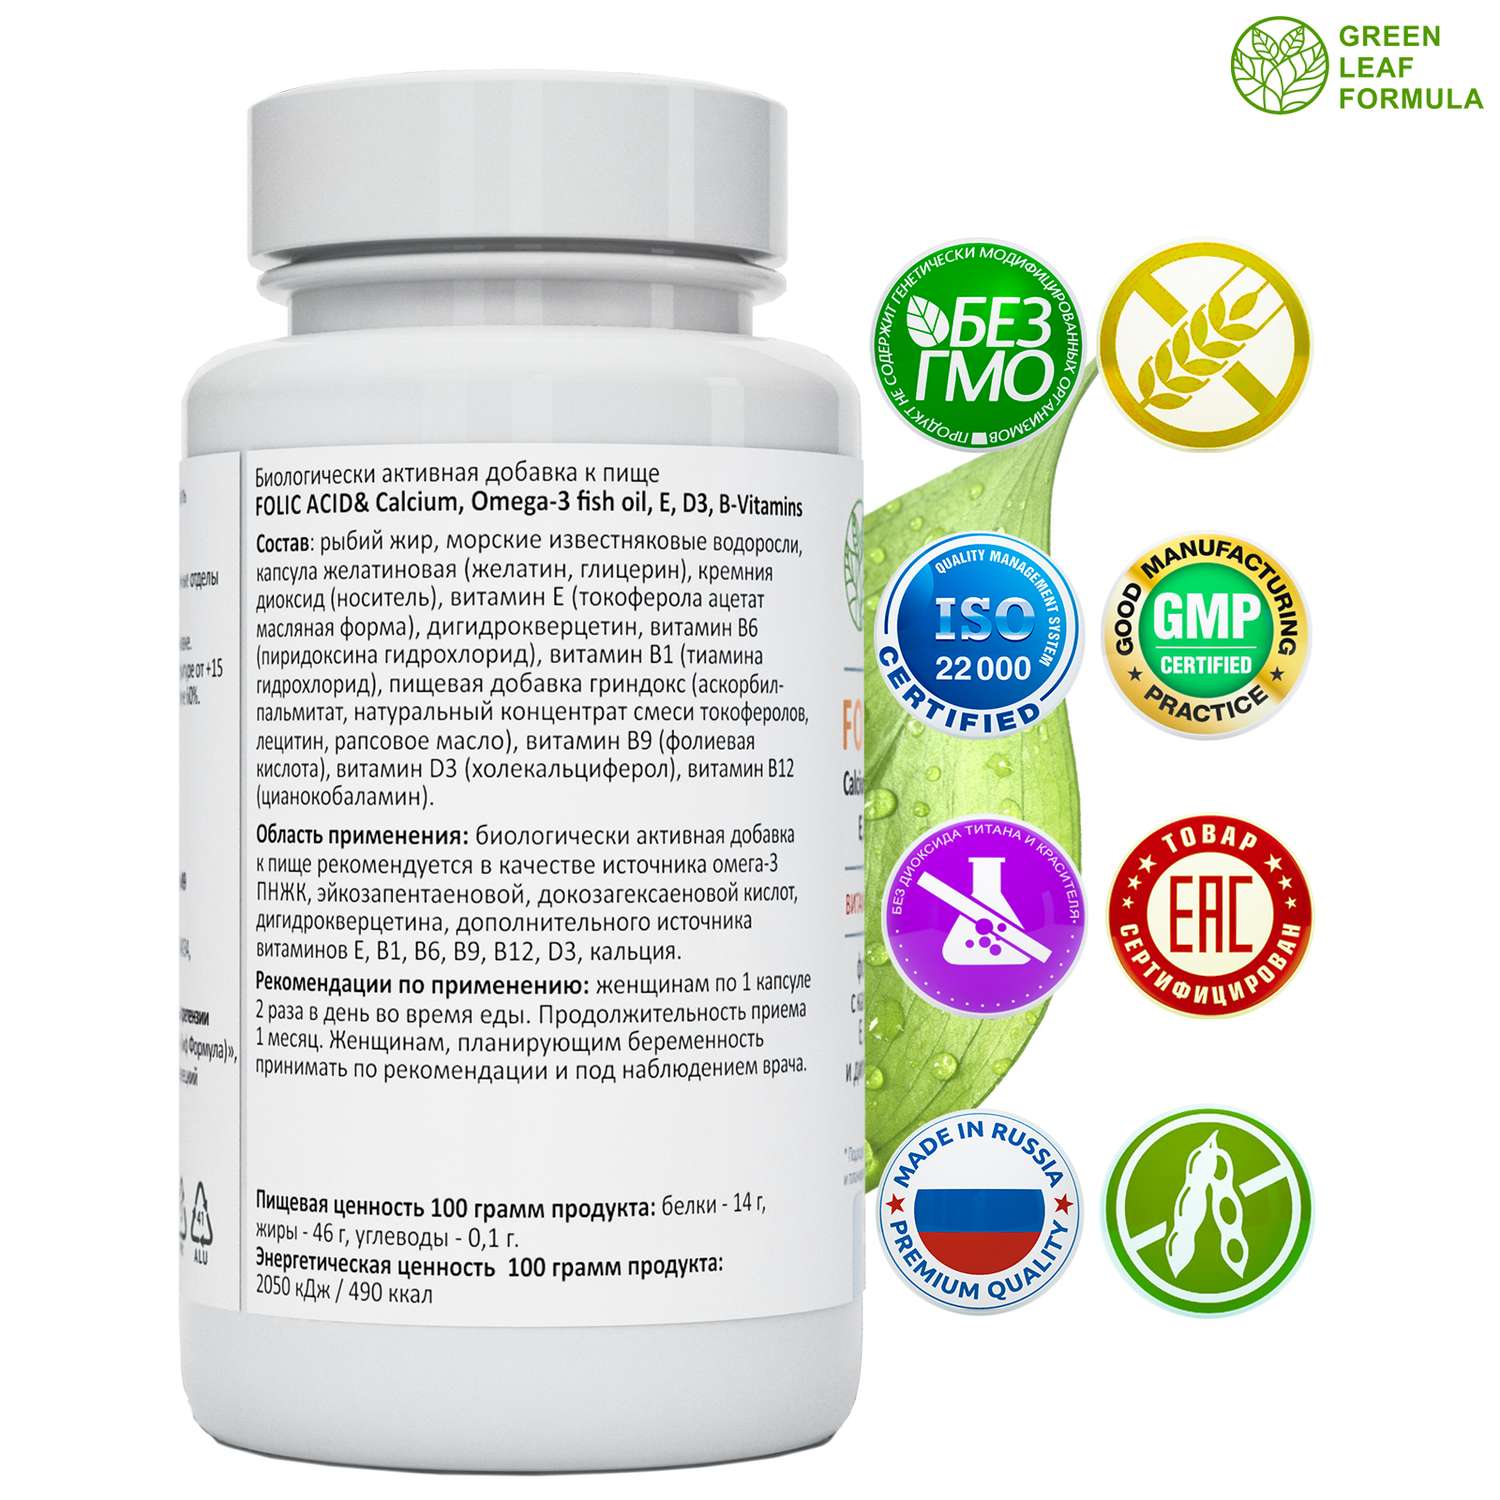 Пробиотики и фолиевая кислота Green Leaf Formula витамины для детей кальций Д3 витамины женские для беременных и кормящих 2 банки - фото 12